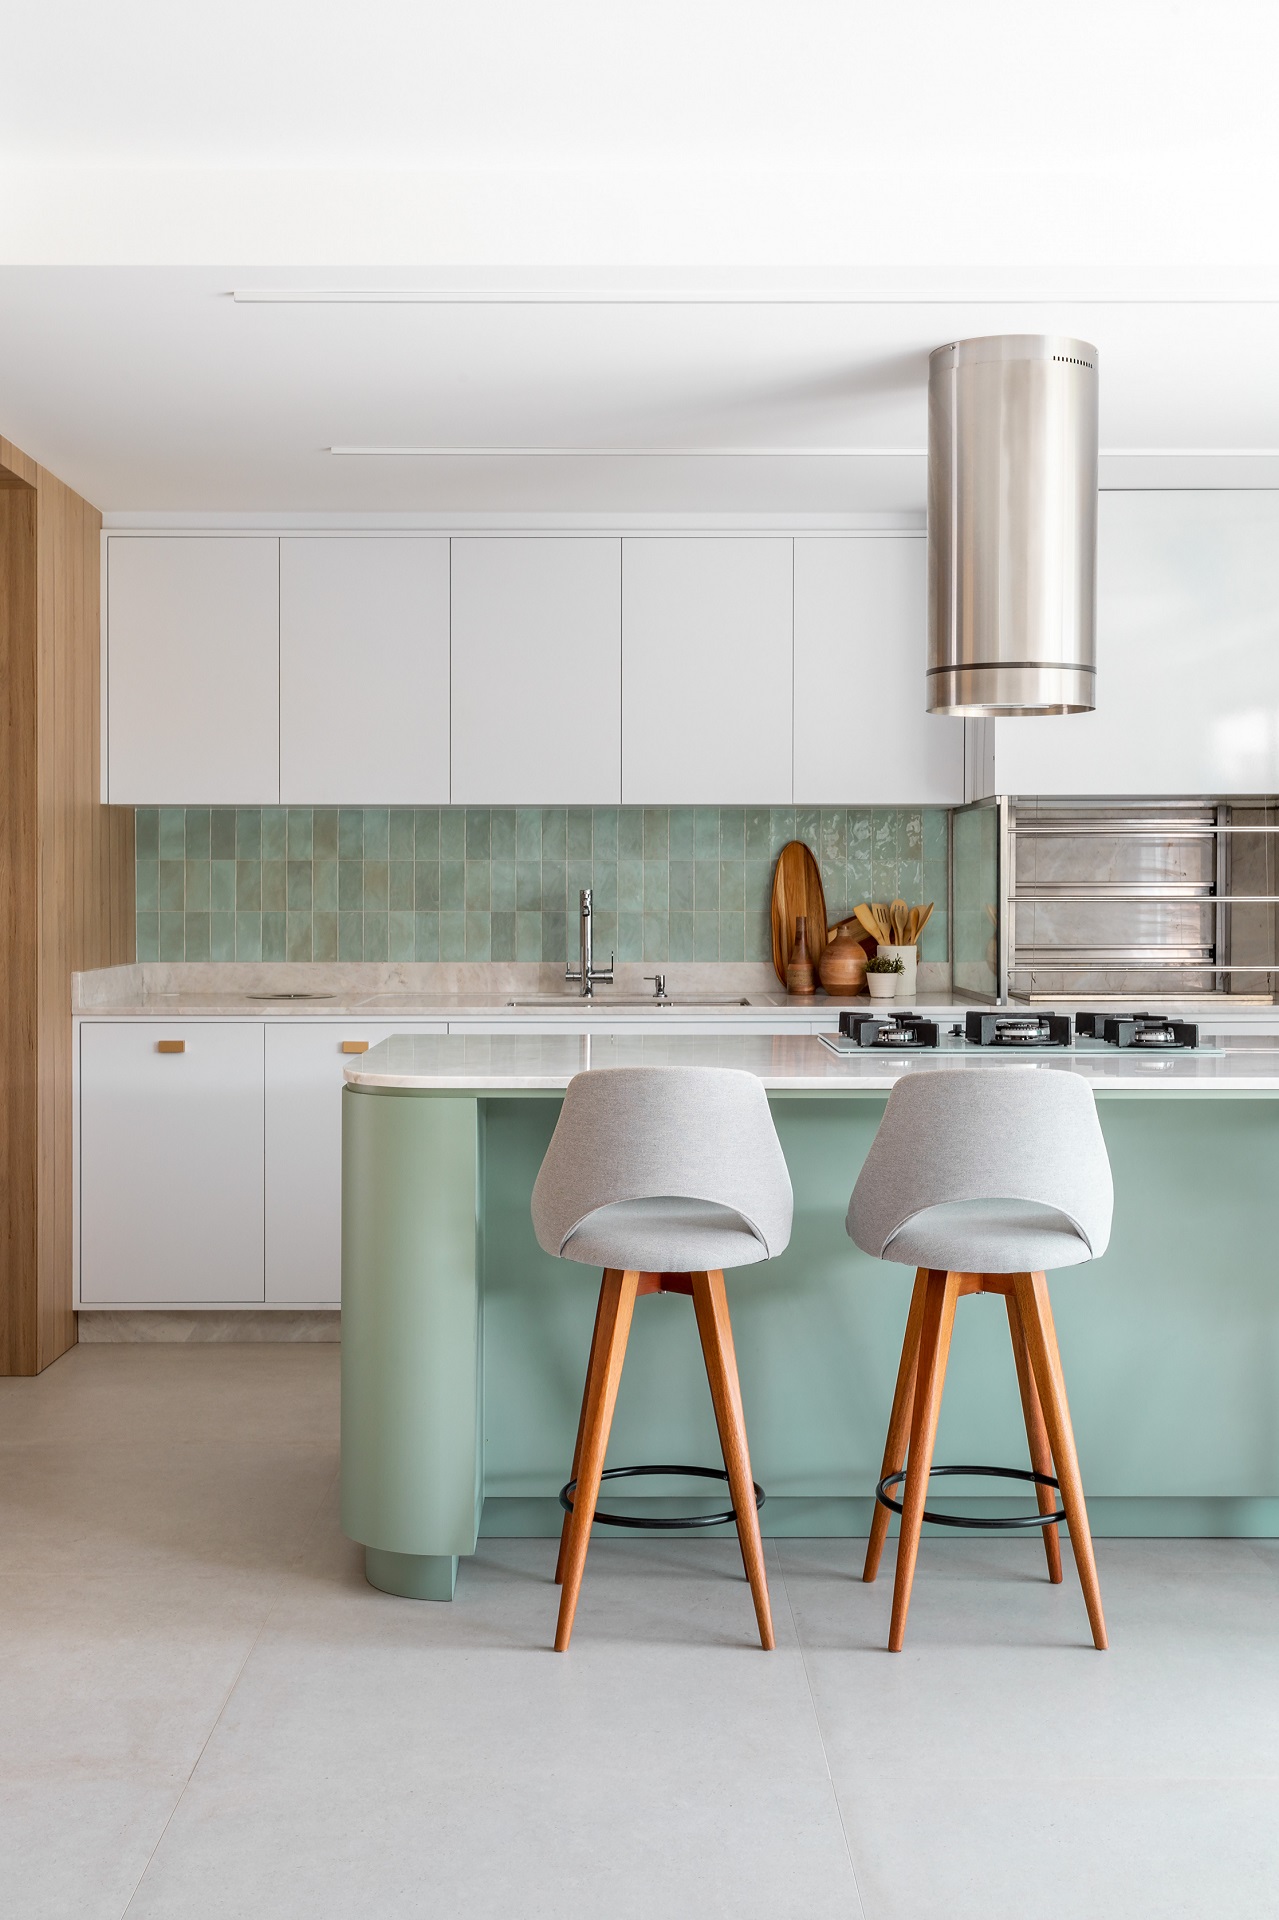 Cozinha integrada em tons de branco e verde-claro, além de detalhes em madeira